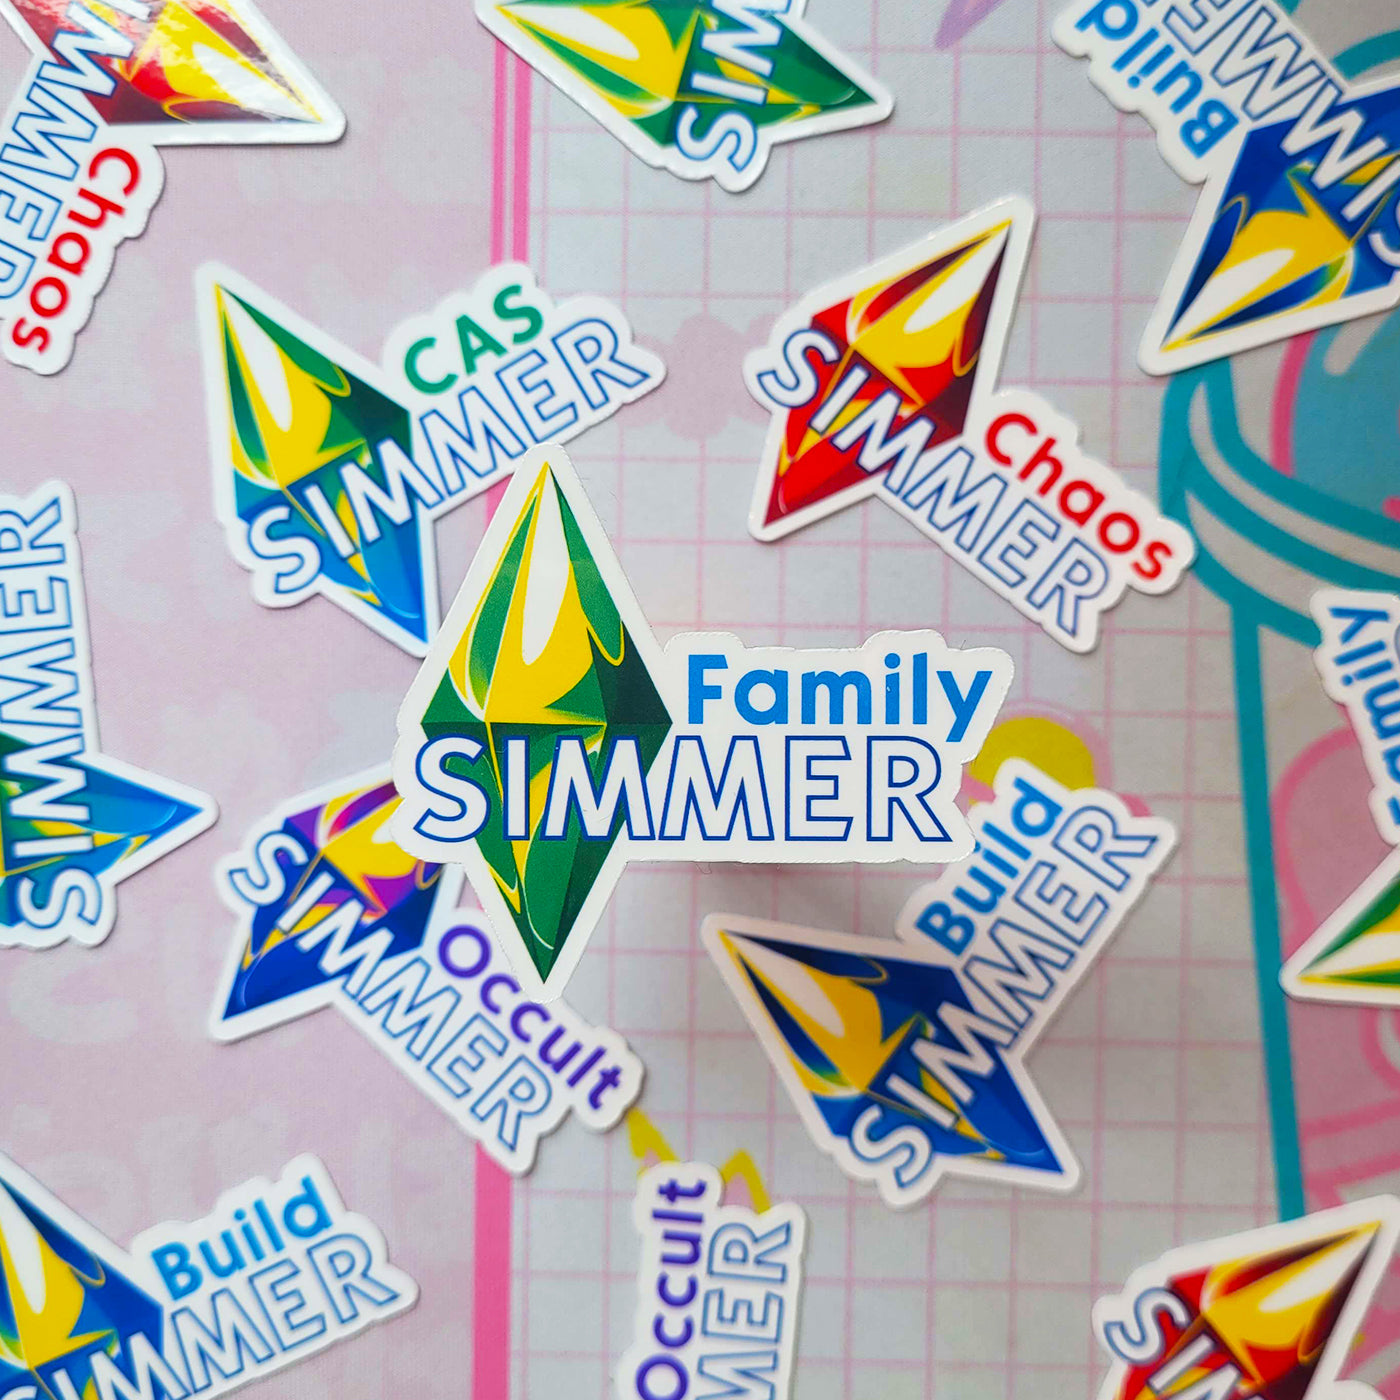 The Sims - Simmer Vinyl Sticker